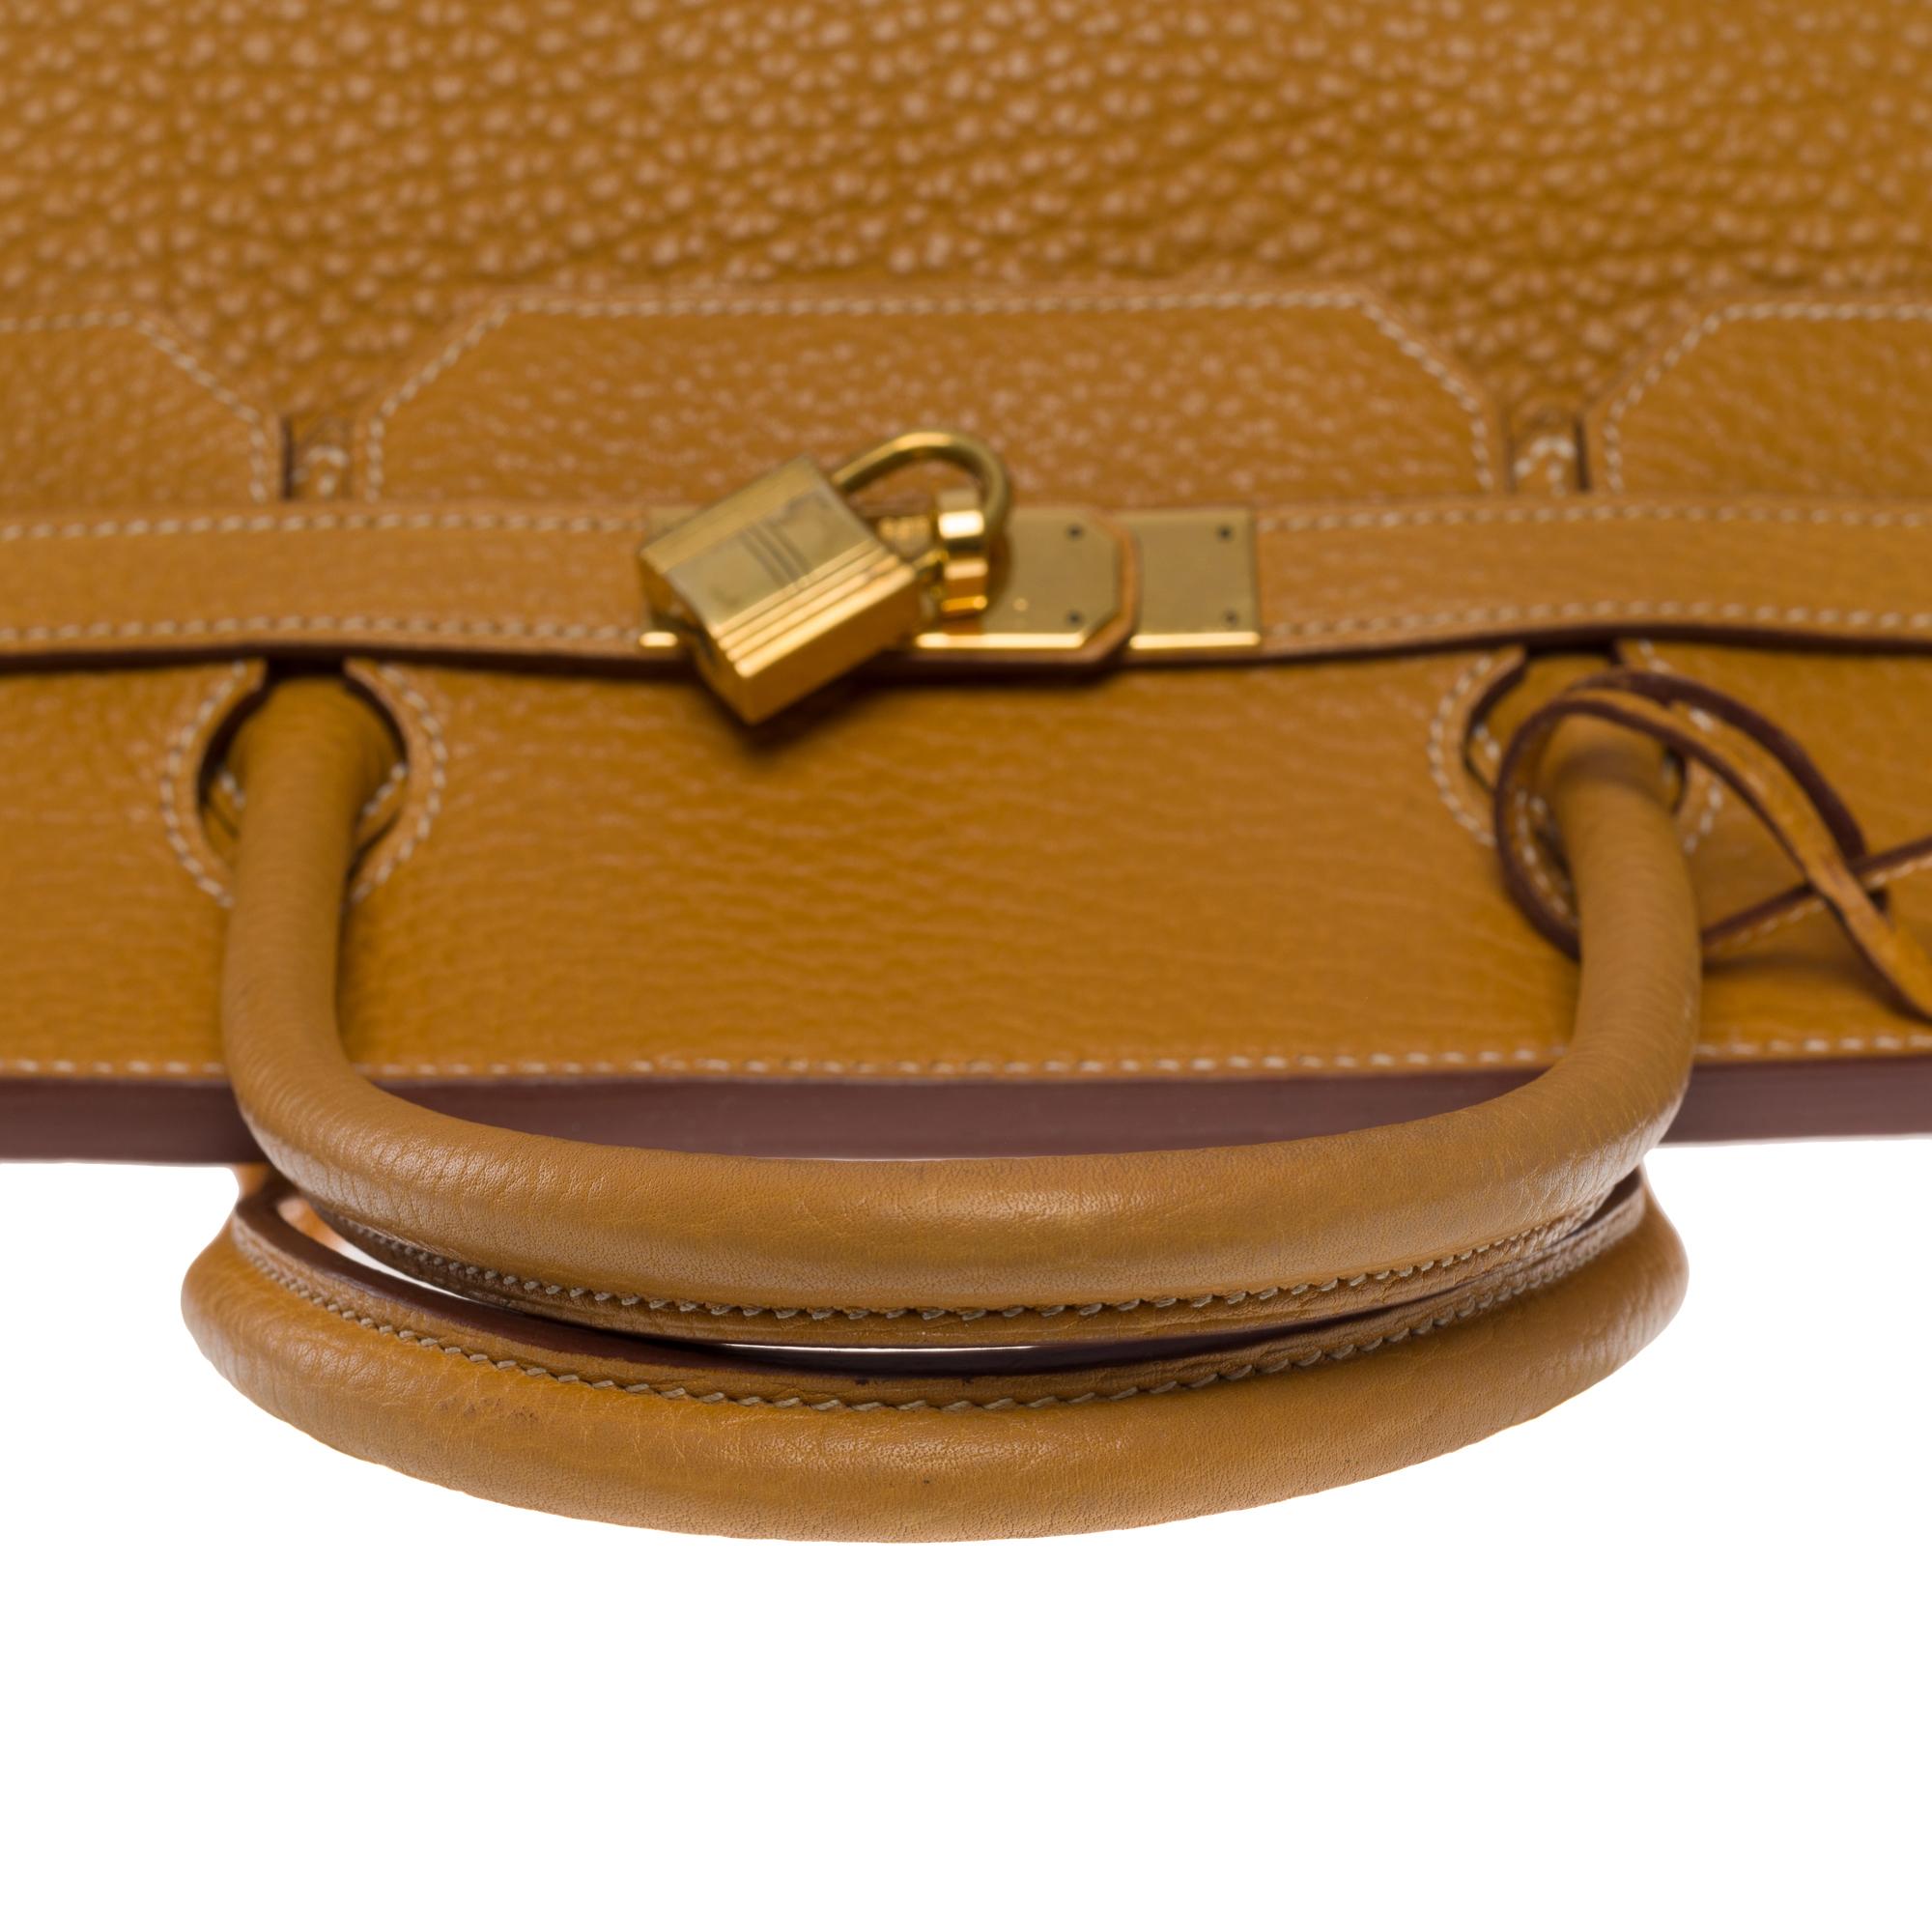 Fantastic Hermes Birkin 40 handbag in Gold Fjord leather, GHW 1